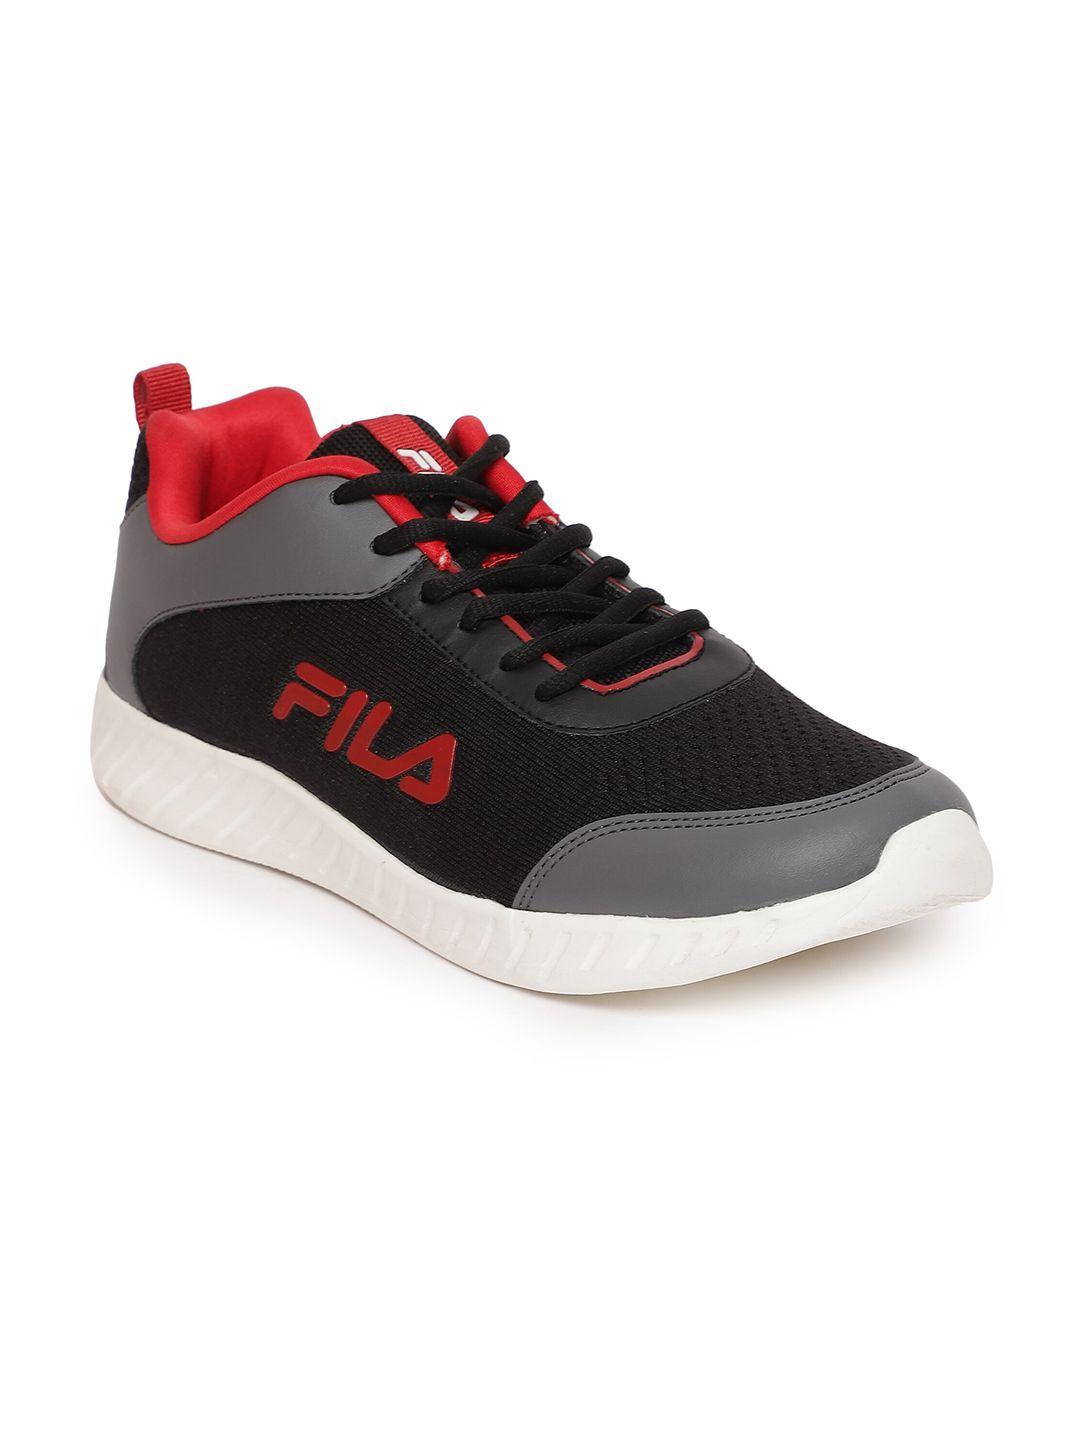 fila-men-mesh-running-sports-shoes